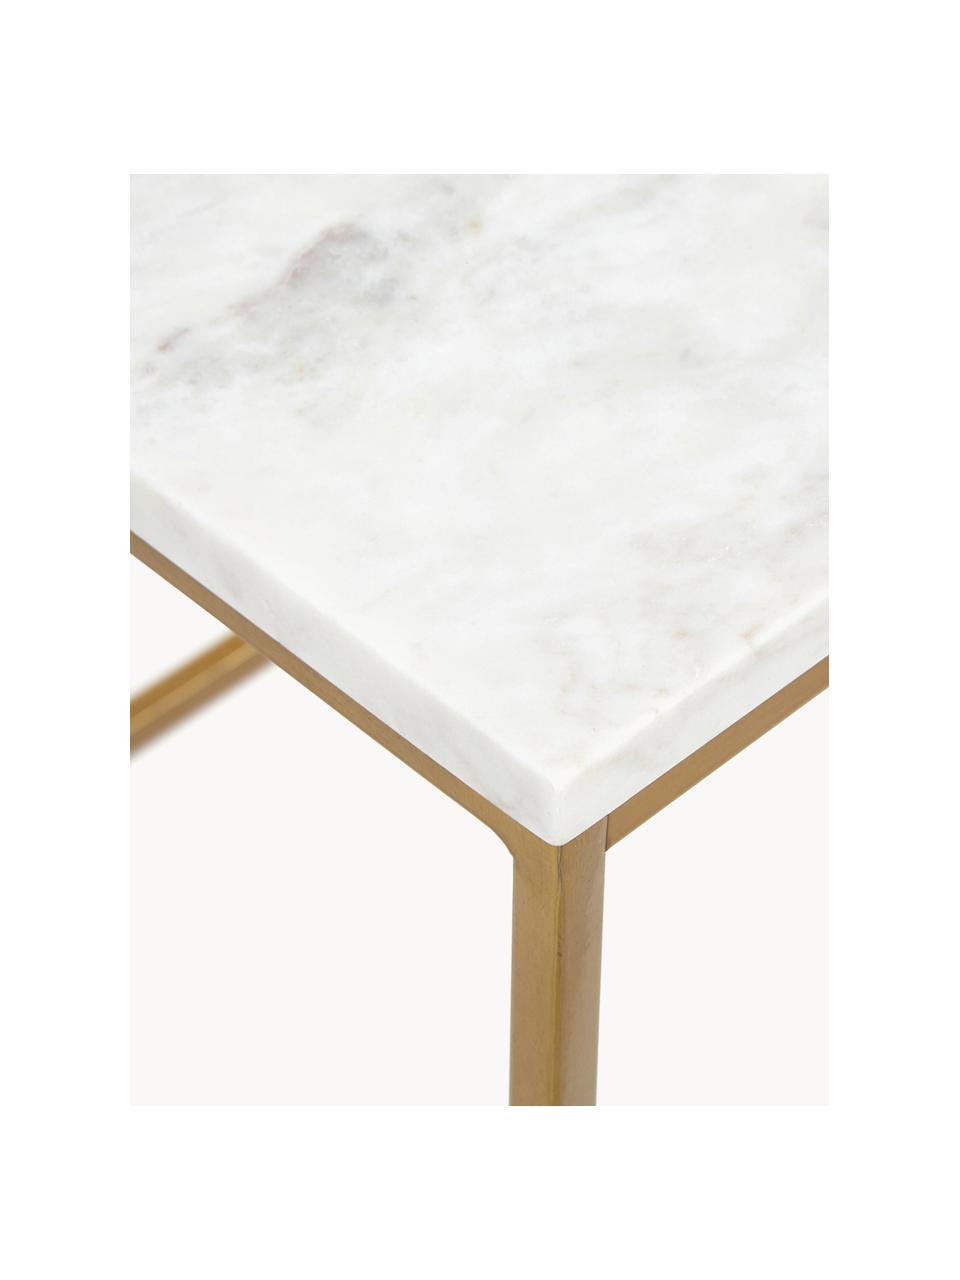 Marmor-Beistelltisch Alys, Tischplatte: Marmor, Gestell: Metall, pulverbeschichtet, Weiß marmoriert, Goldfarben, B 45 x H 50 cm